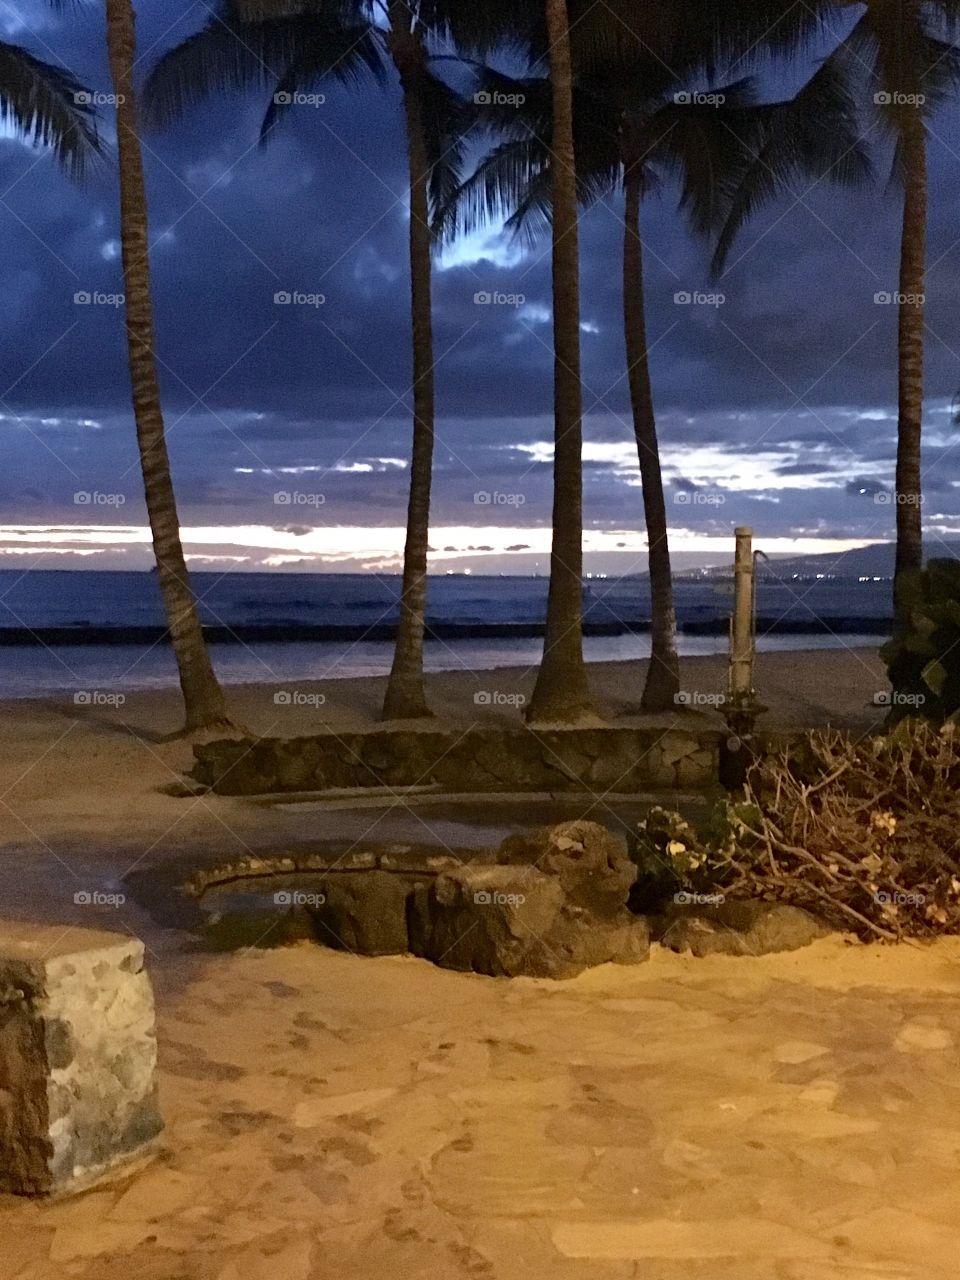 Aloha. Waikiki Beach at night